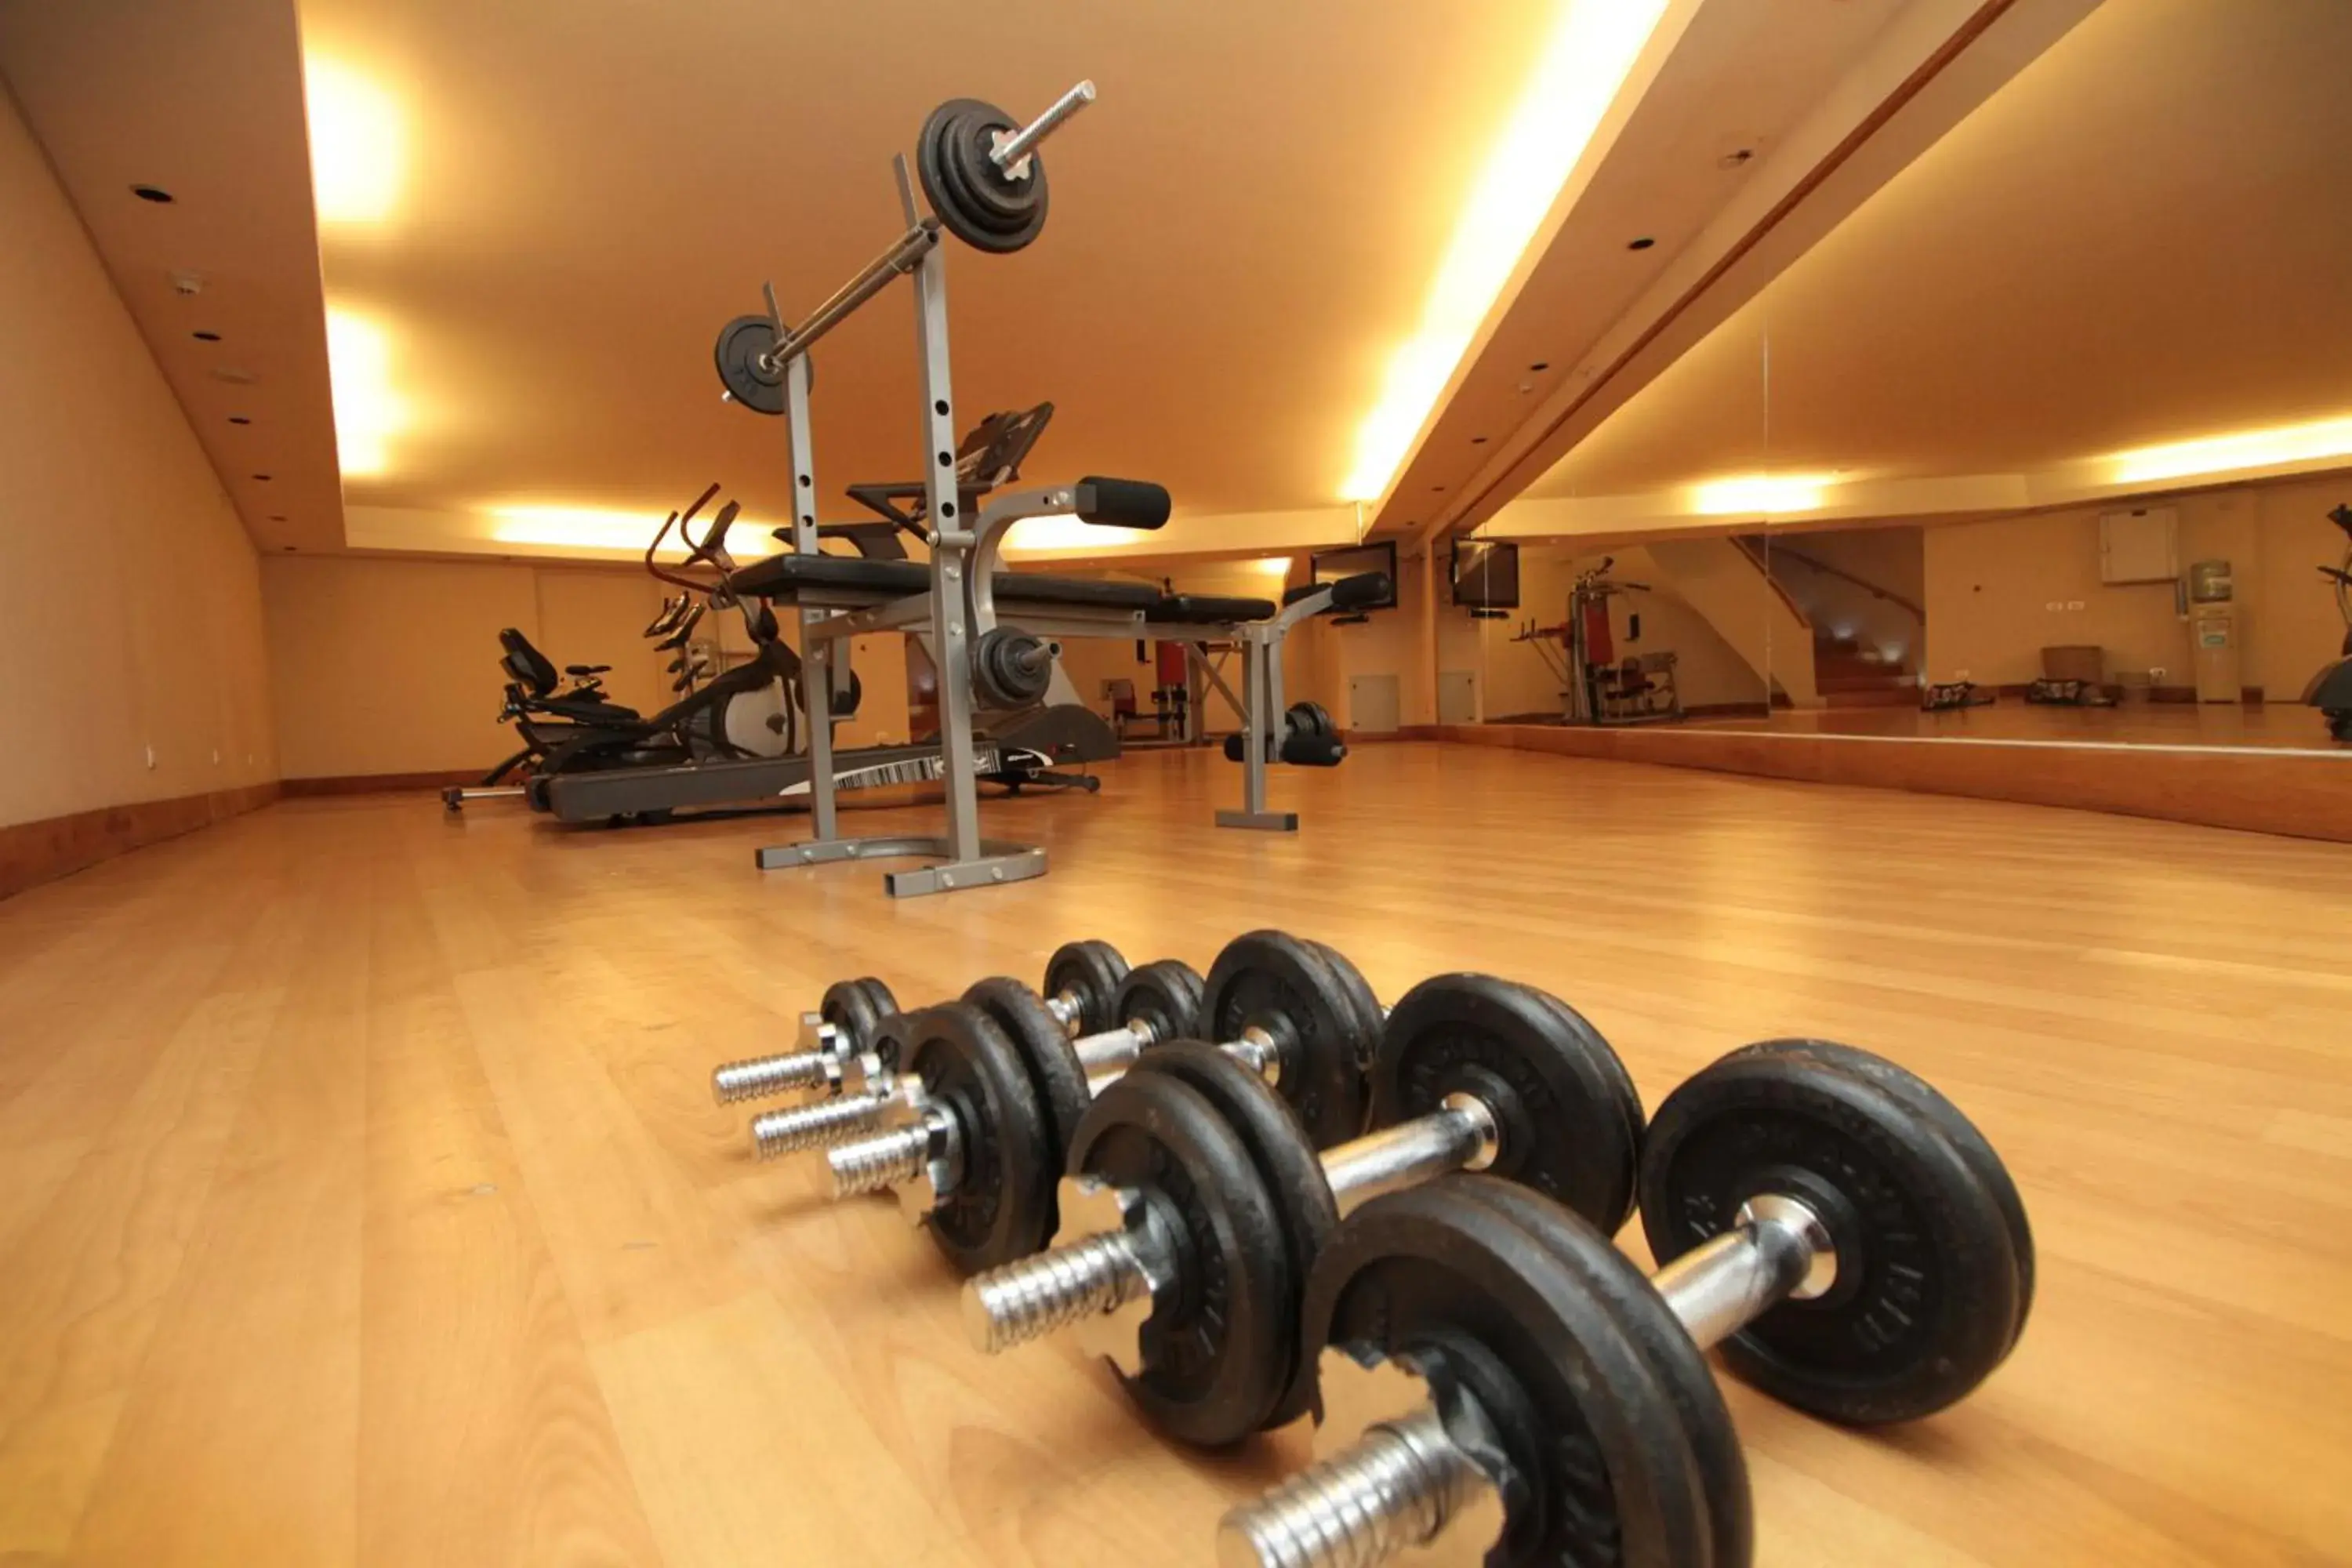 Fitness centre/facilities, Fitness Center/Facilities in Radisson Hotel Puerto Varas